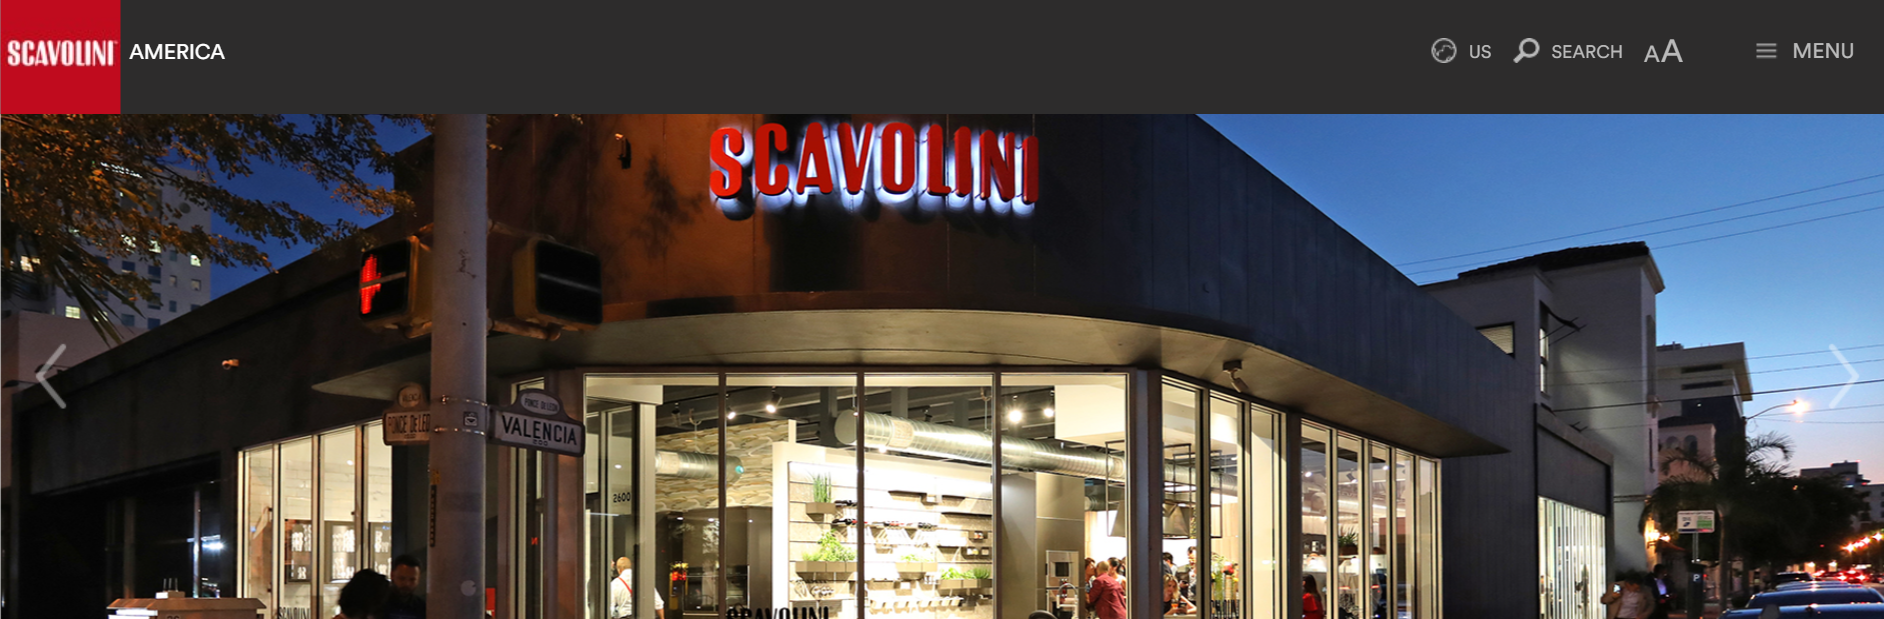 Scavolini Kitchen Supplies in Miami